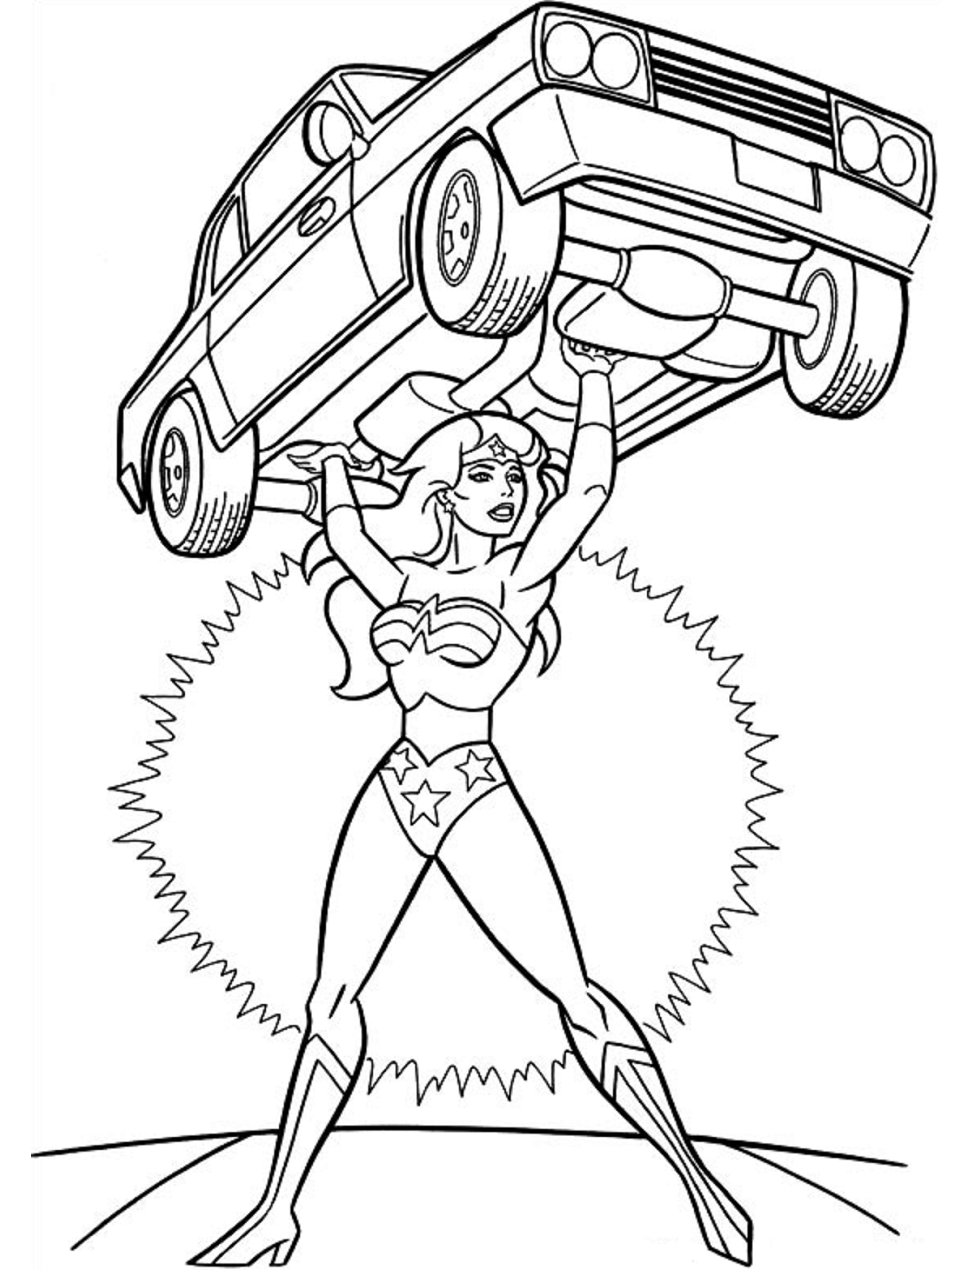 Wonder Woman Lifting A Car Coloring Page